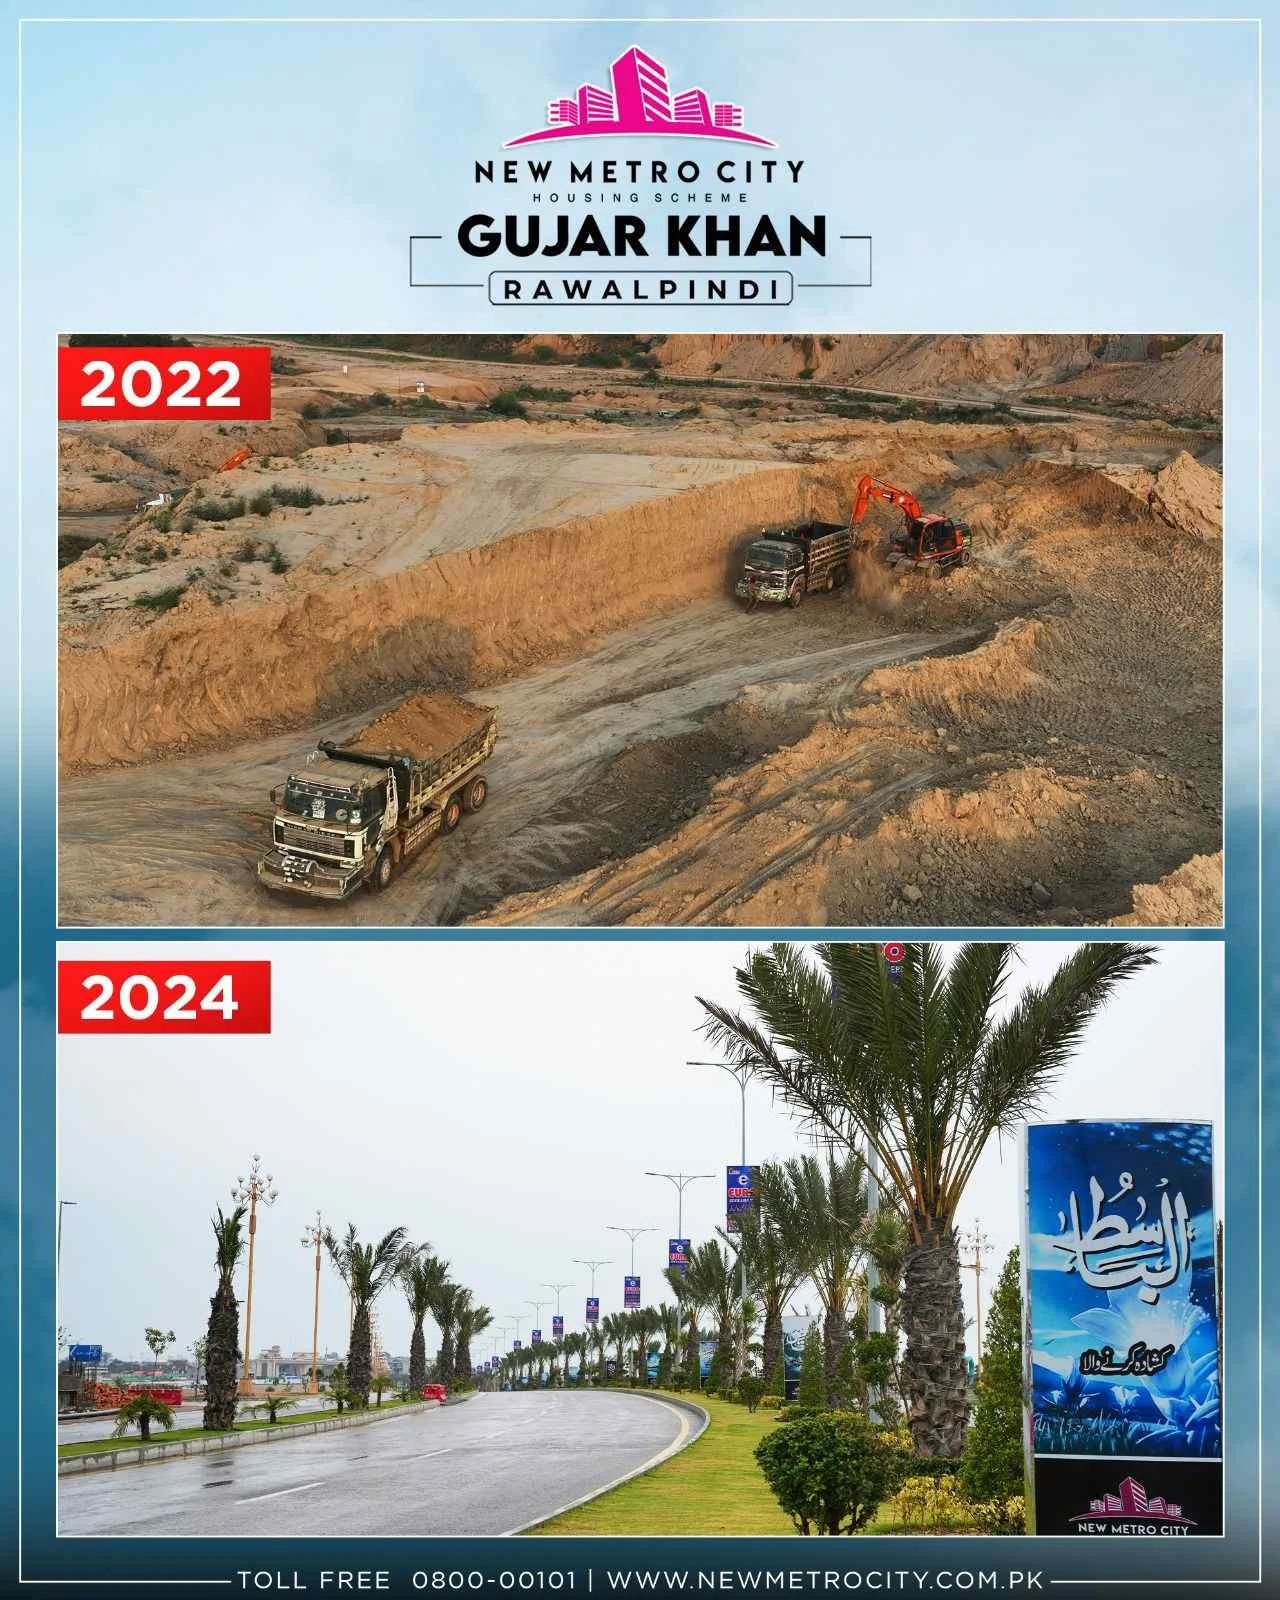 New Metro City Gujar khan Before & After development